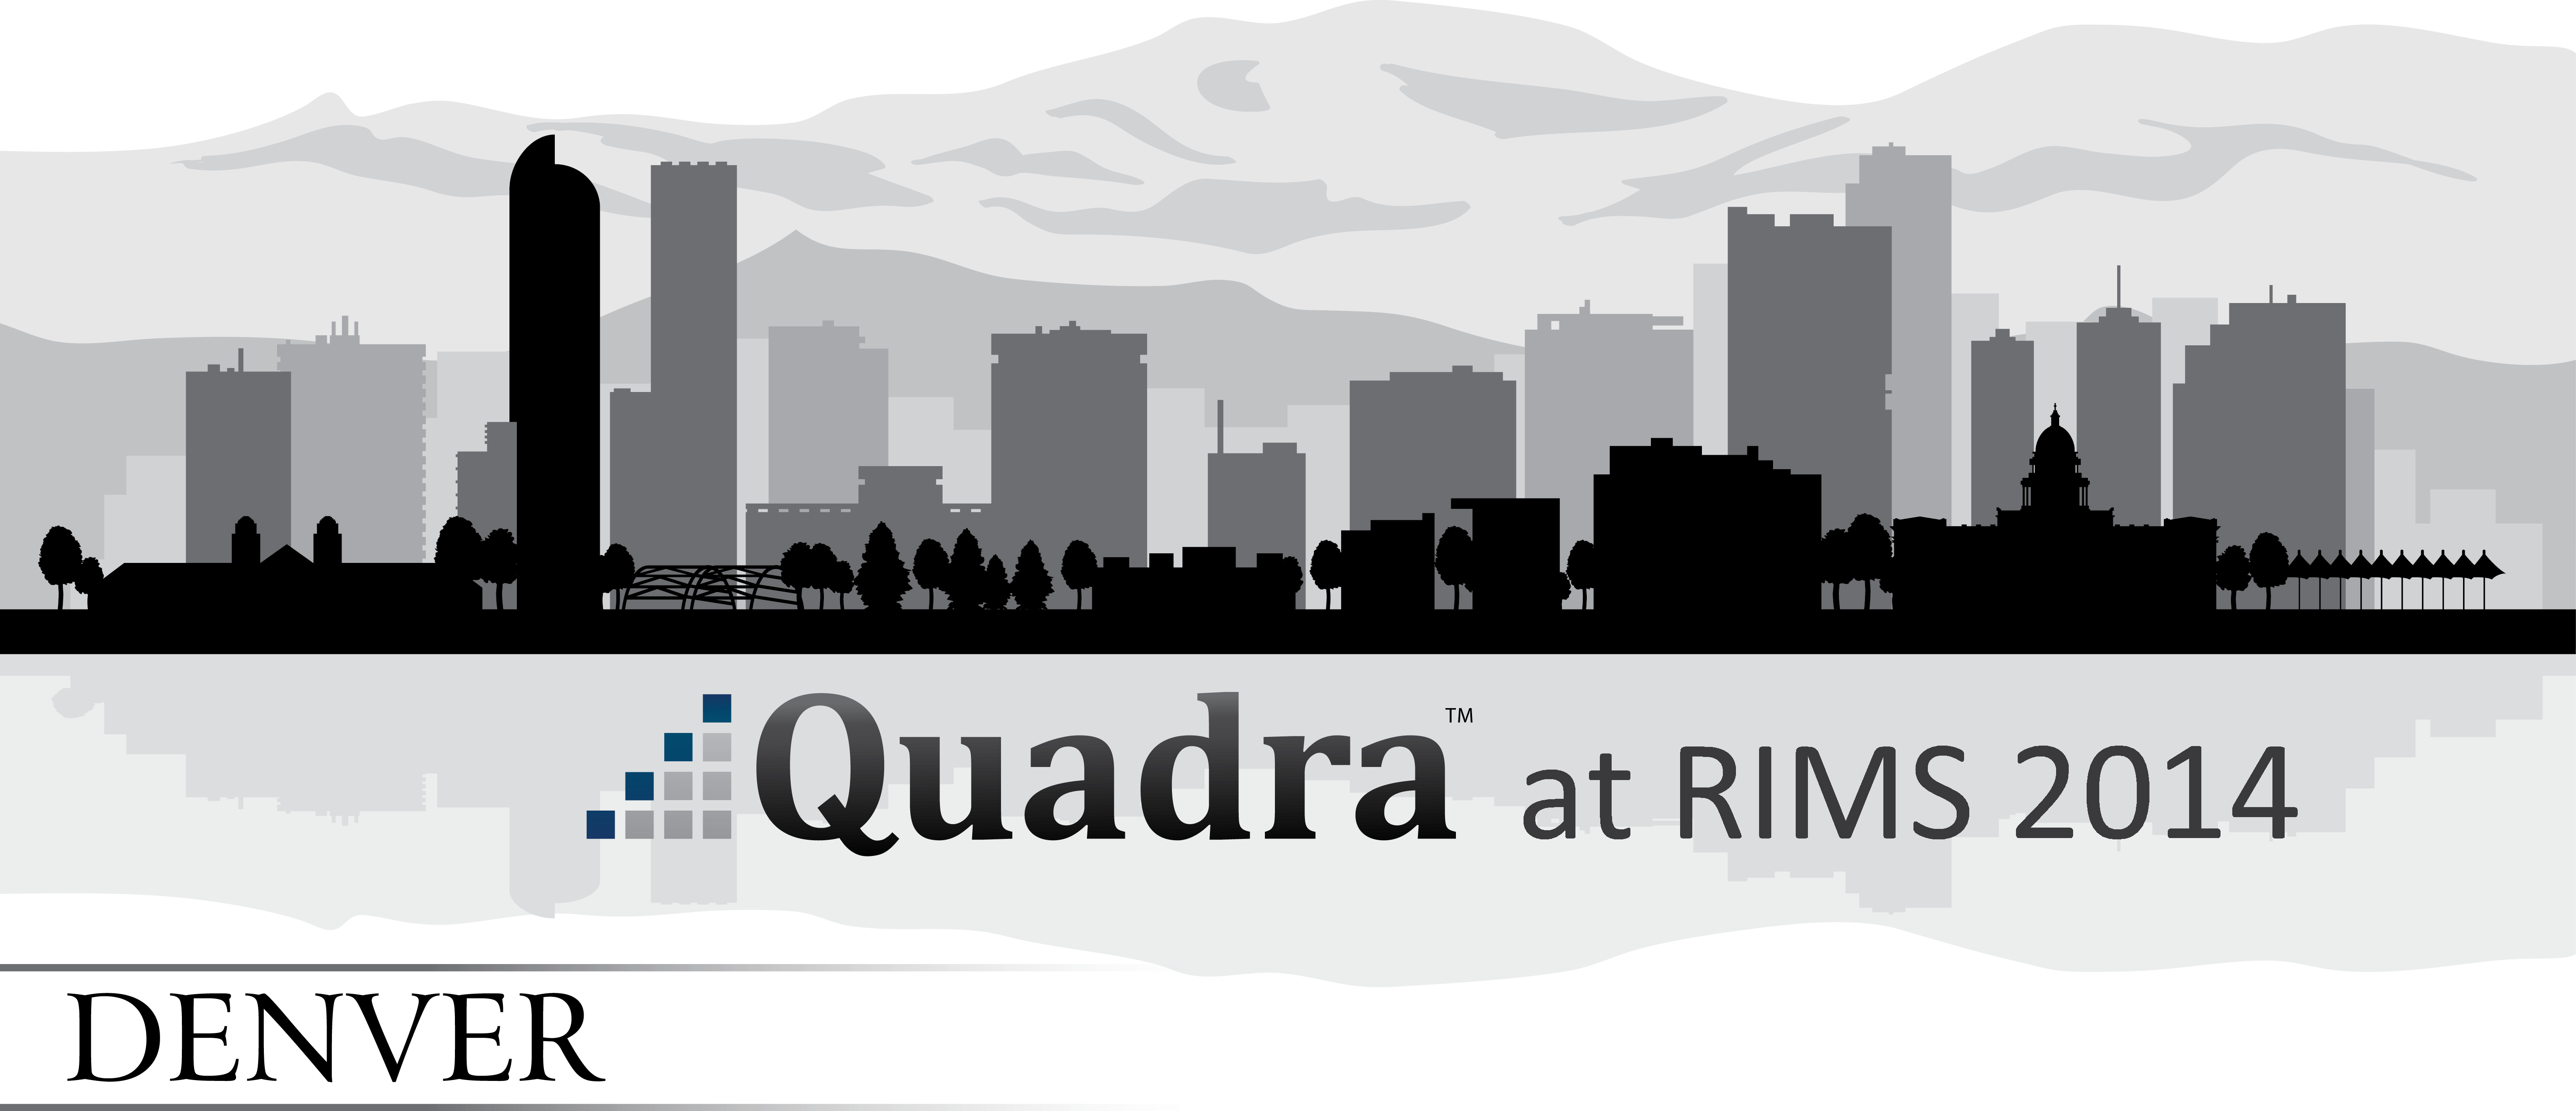 Quadra showcased at RIMS 2014